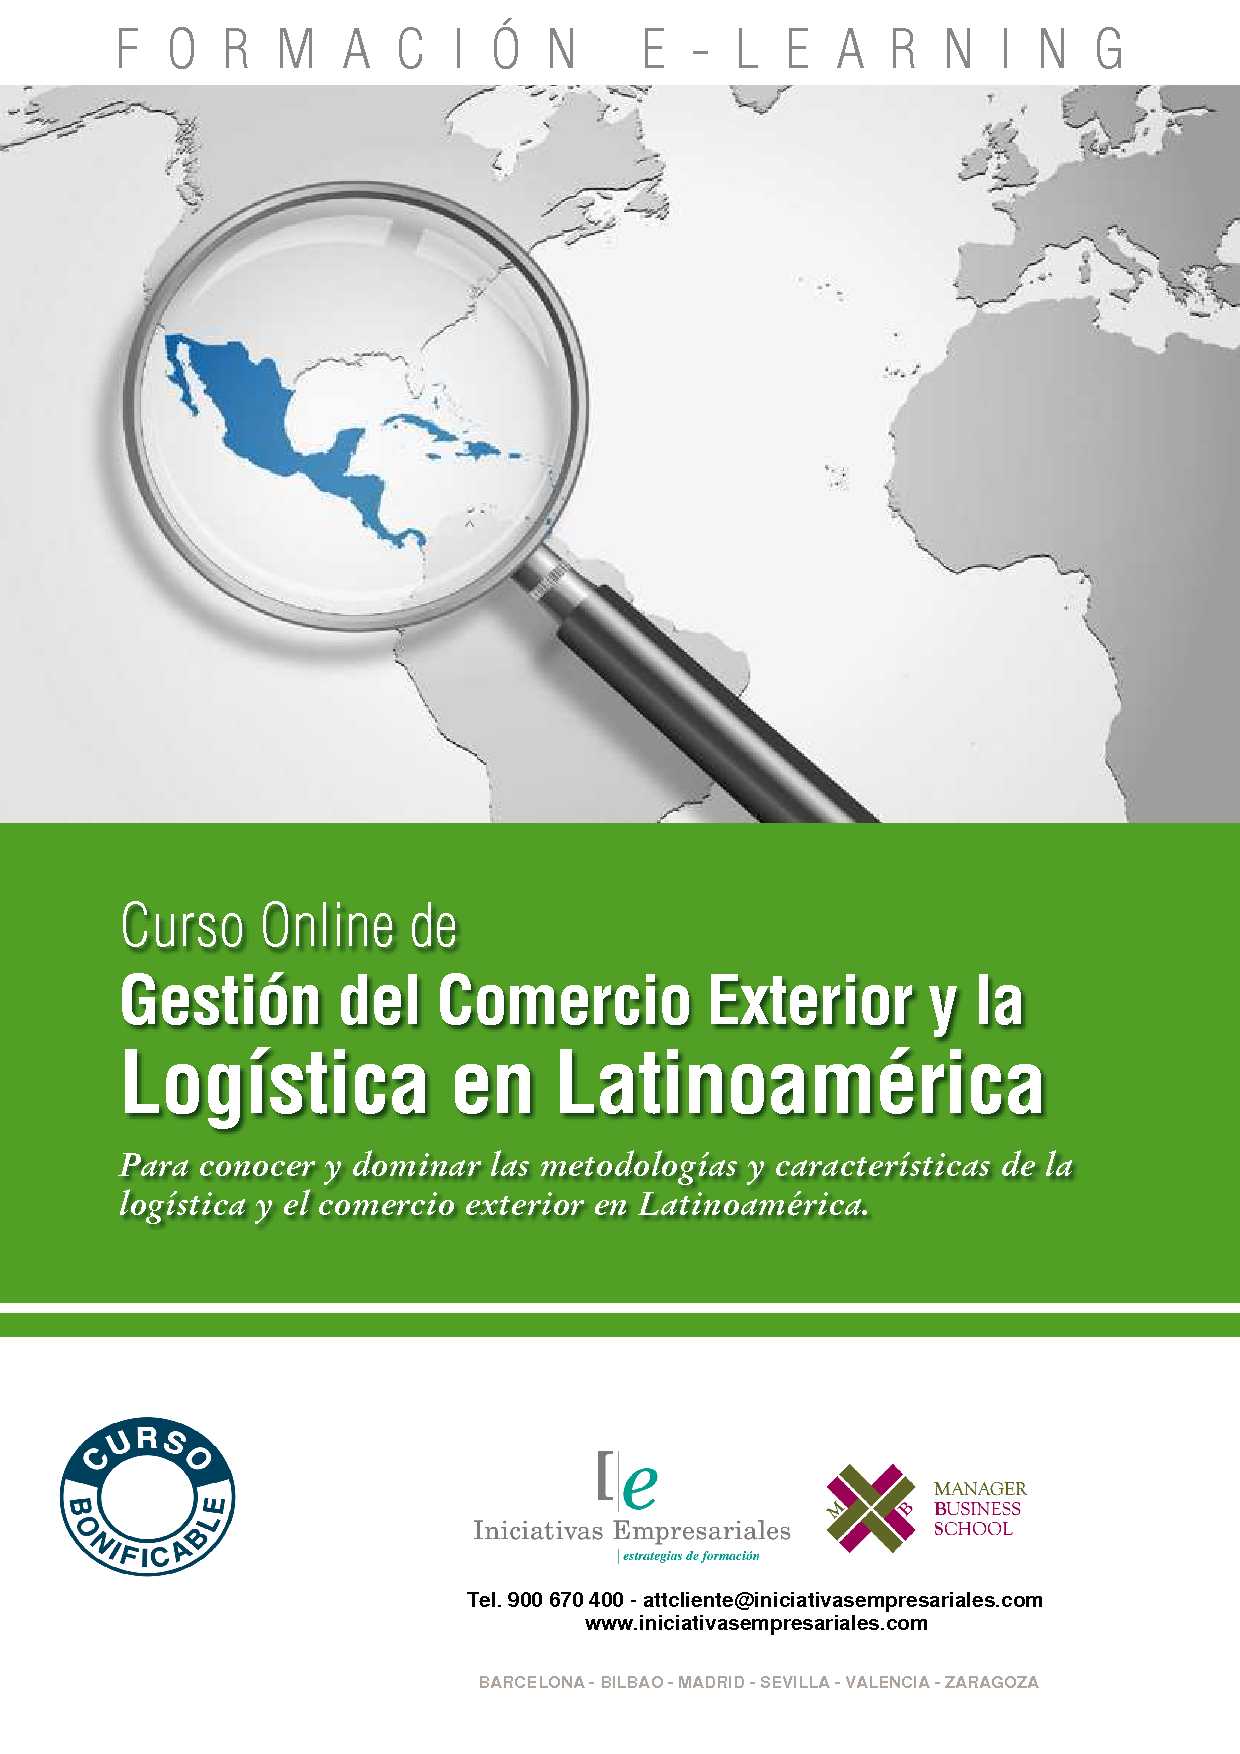 Gestión del Comercio Exterior y la Logística en Latinoamérica